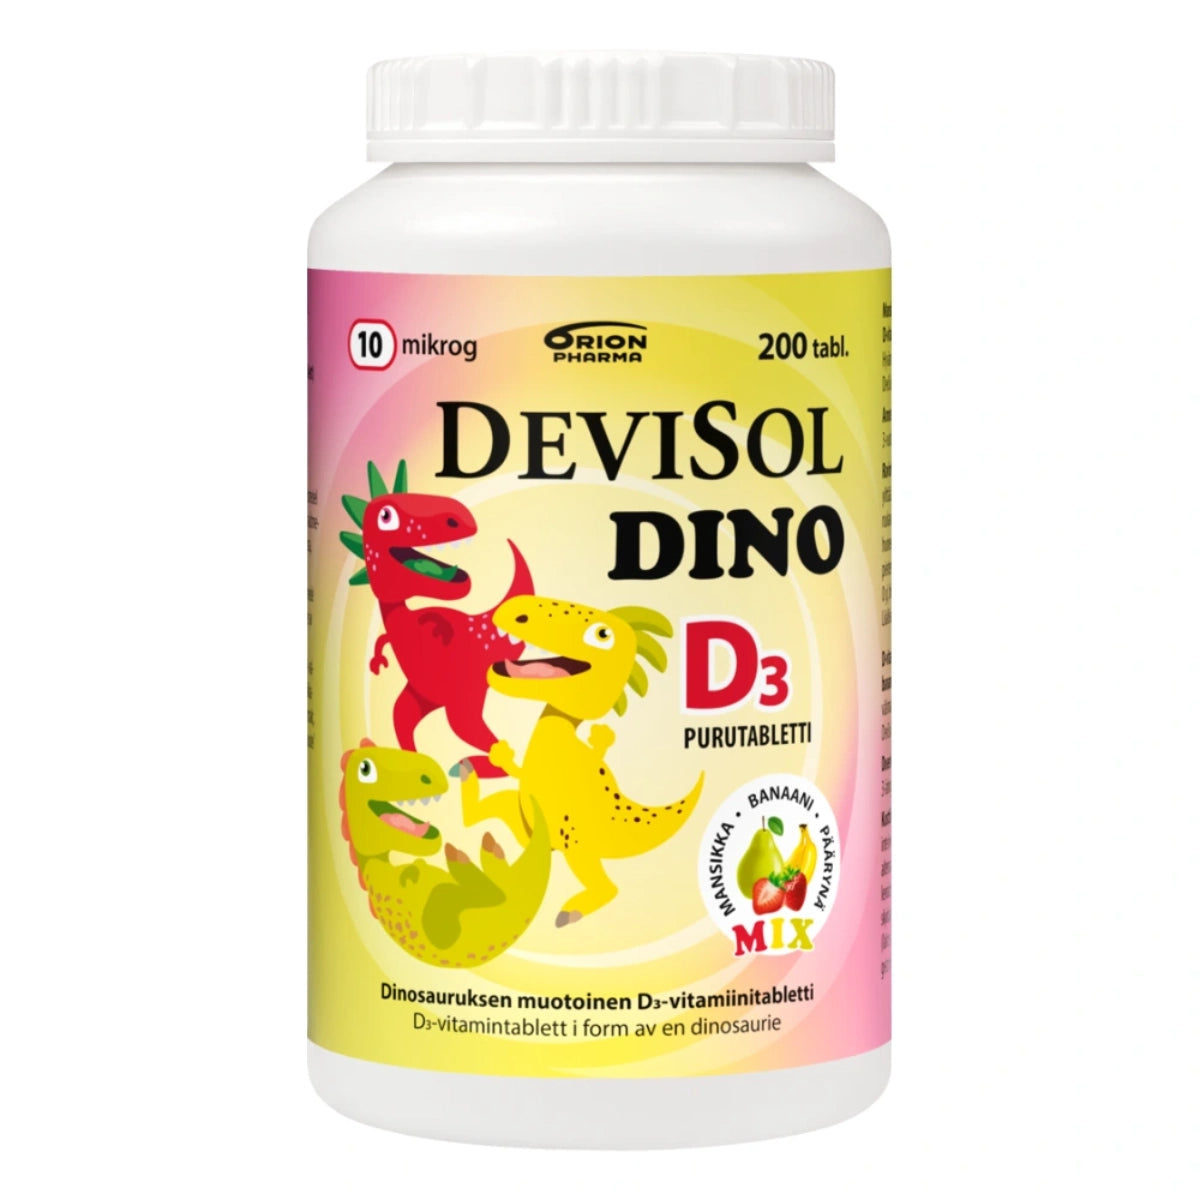 DEVISOL Dino Mix 10 mikrog purutabletti 200 kpl dinosauruksen muotoisia mansikan, banaanin ja päärynän makuisia D-vitamiinipurutabletteja